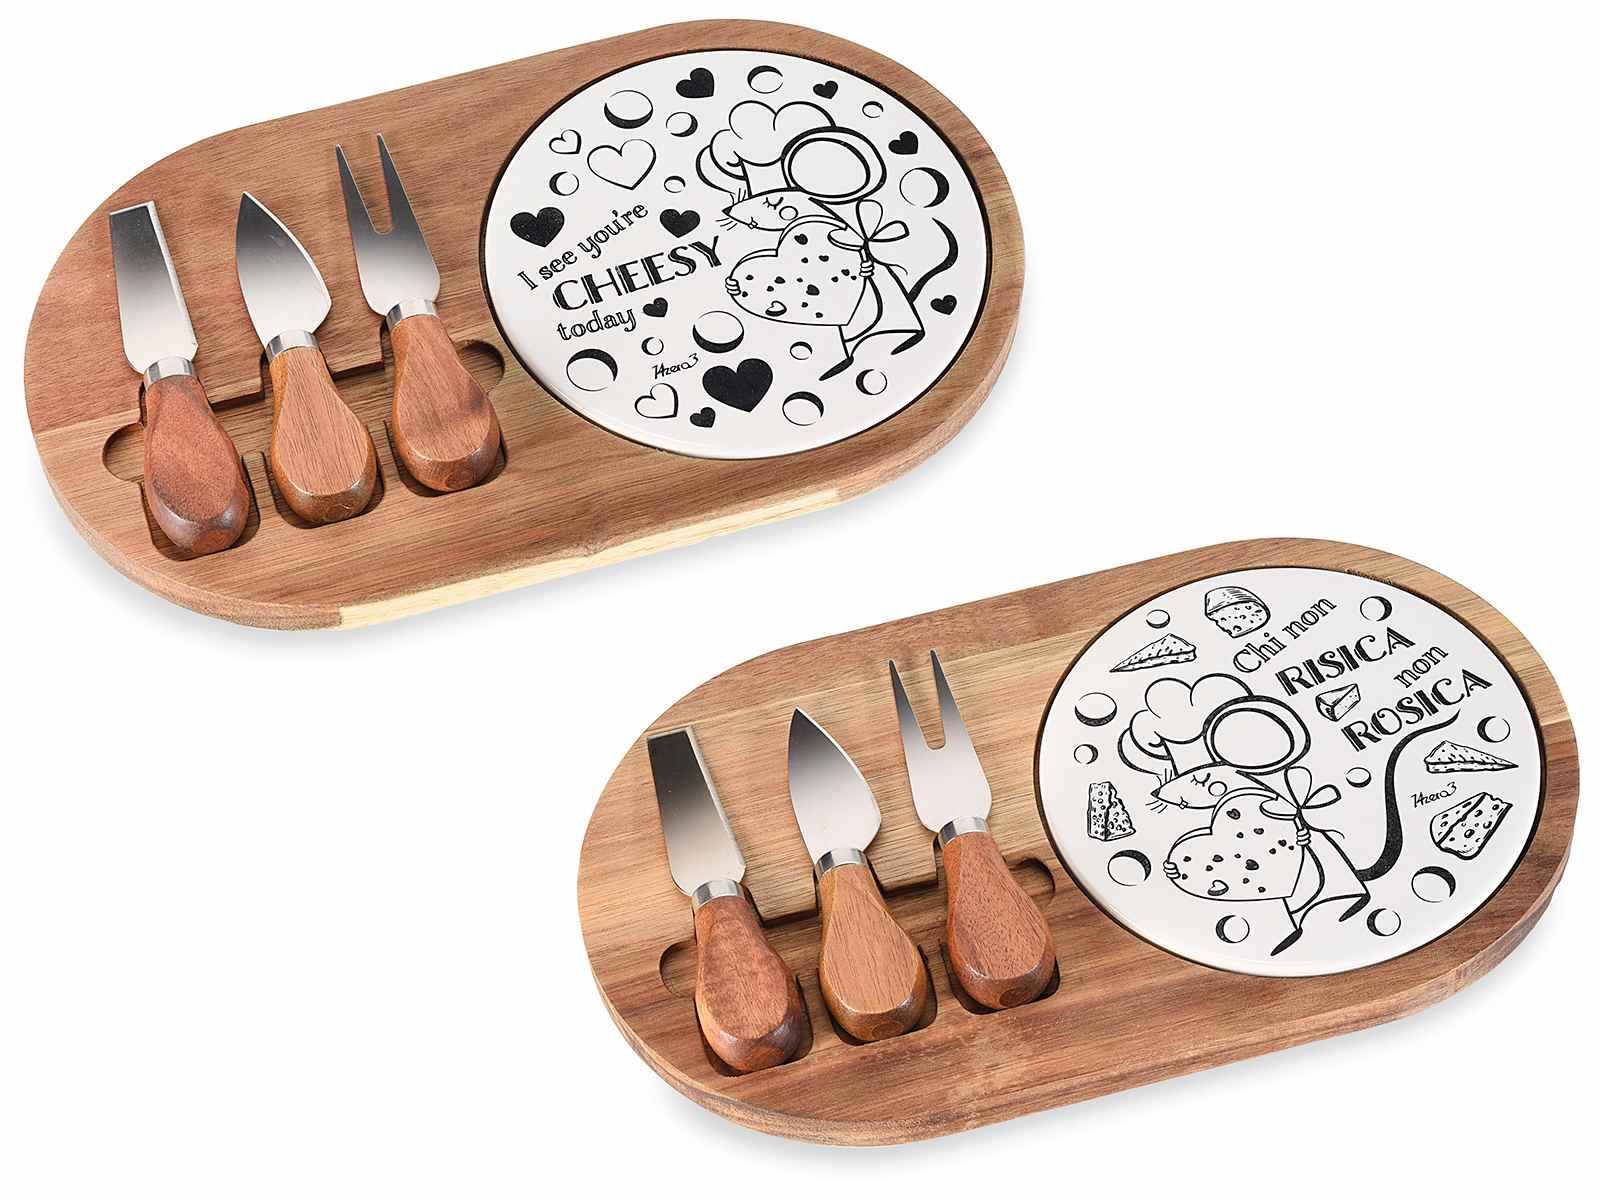 Featured image for “Set formaggio con tagliere in legno e ceramica e 3 coltelli”